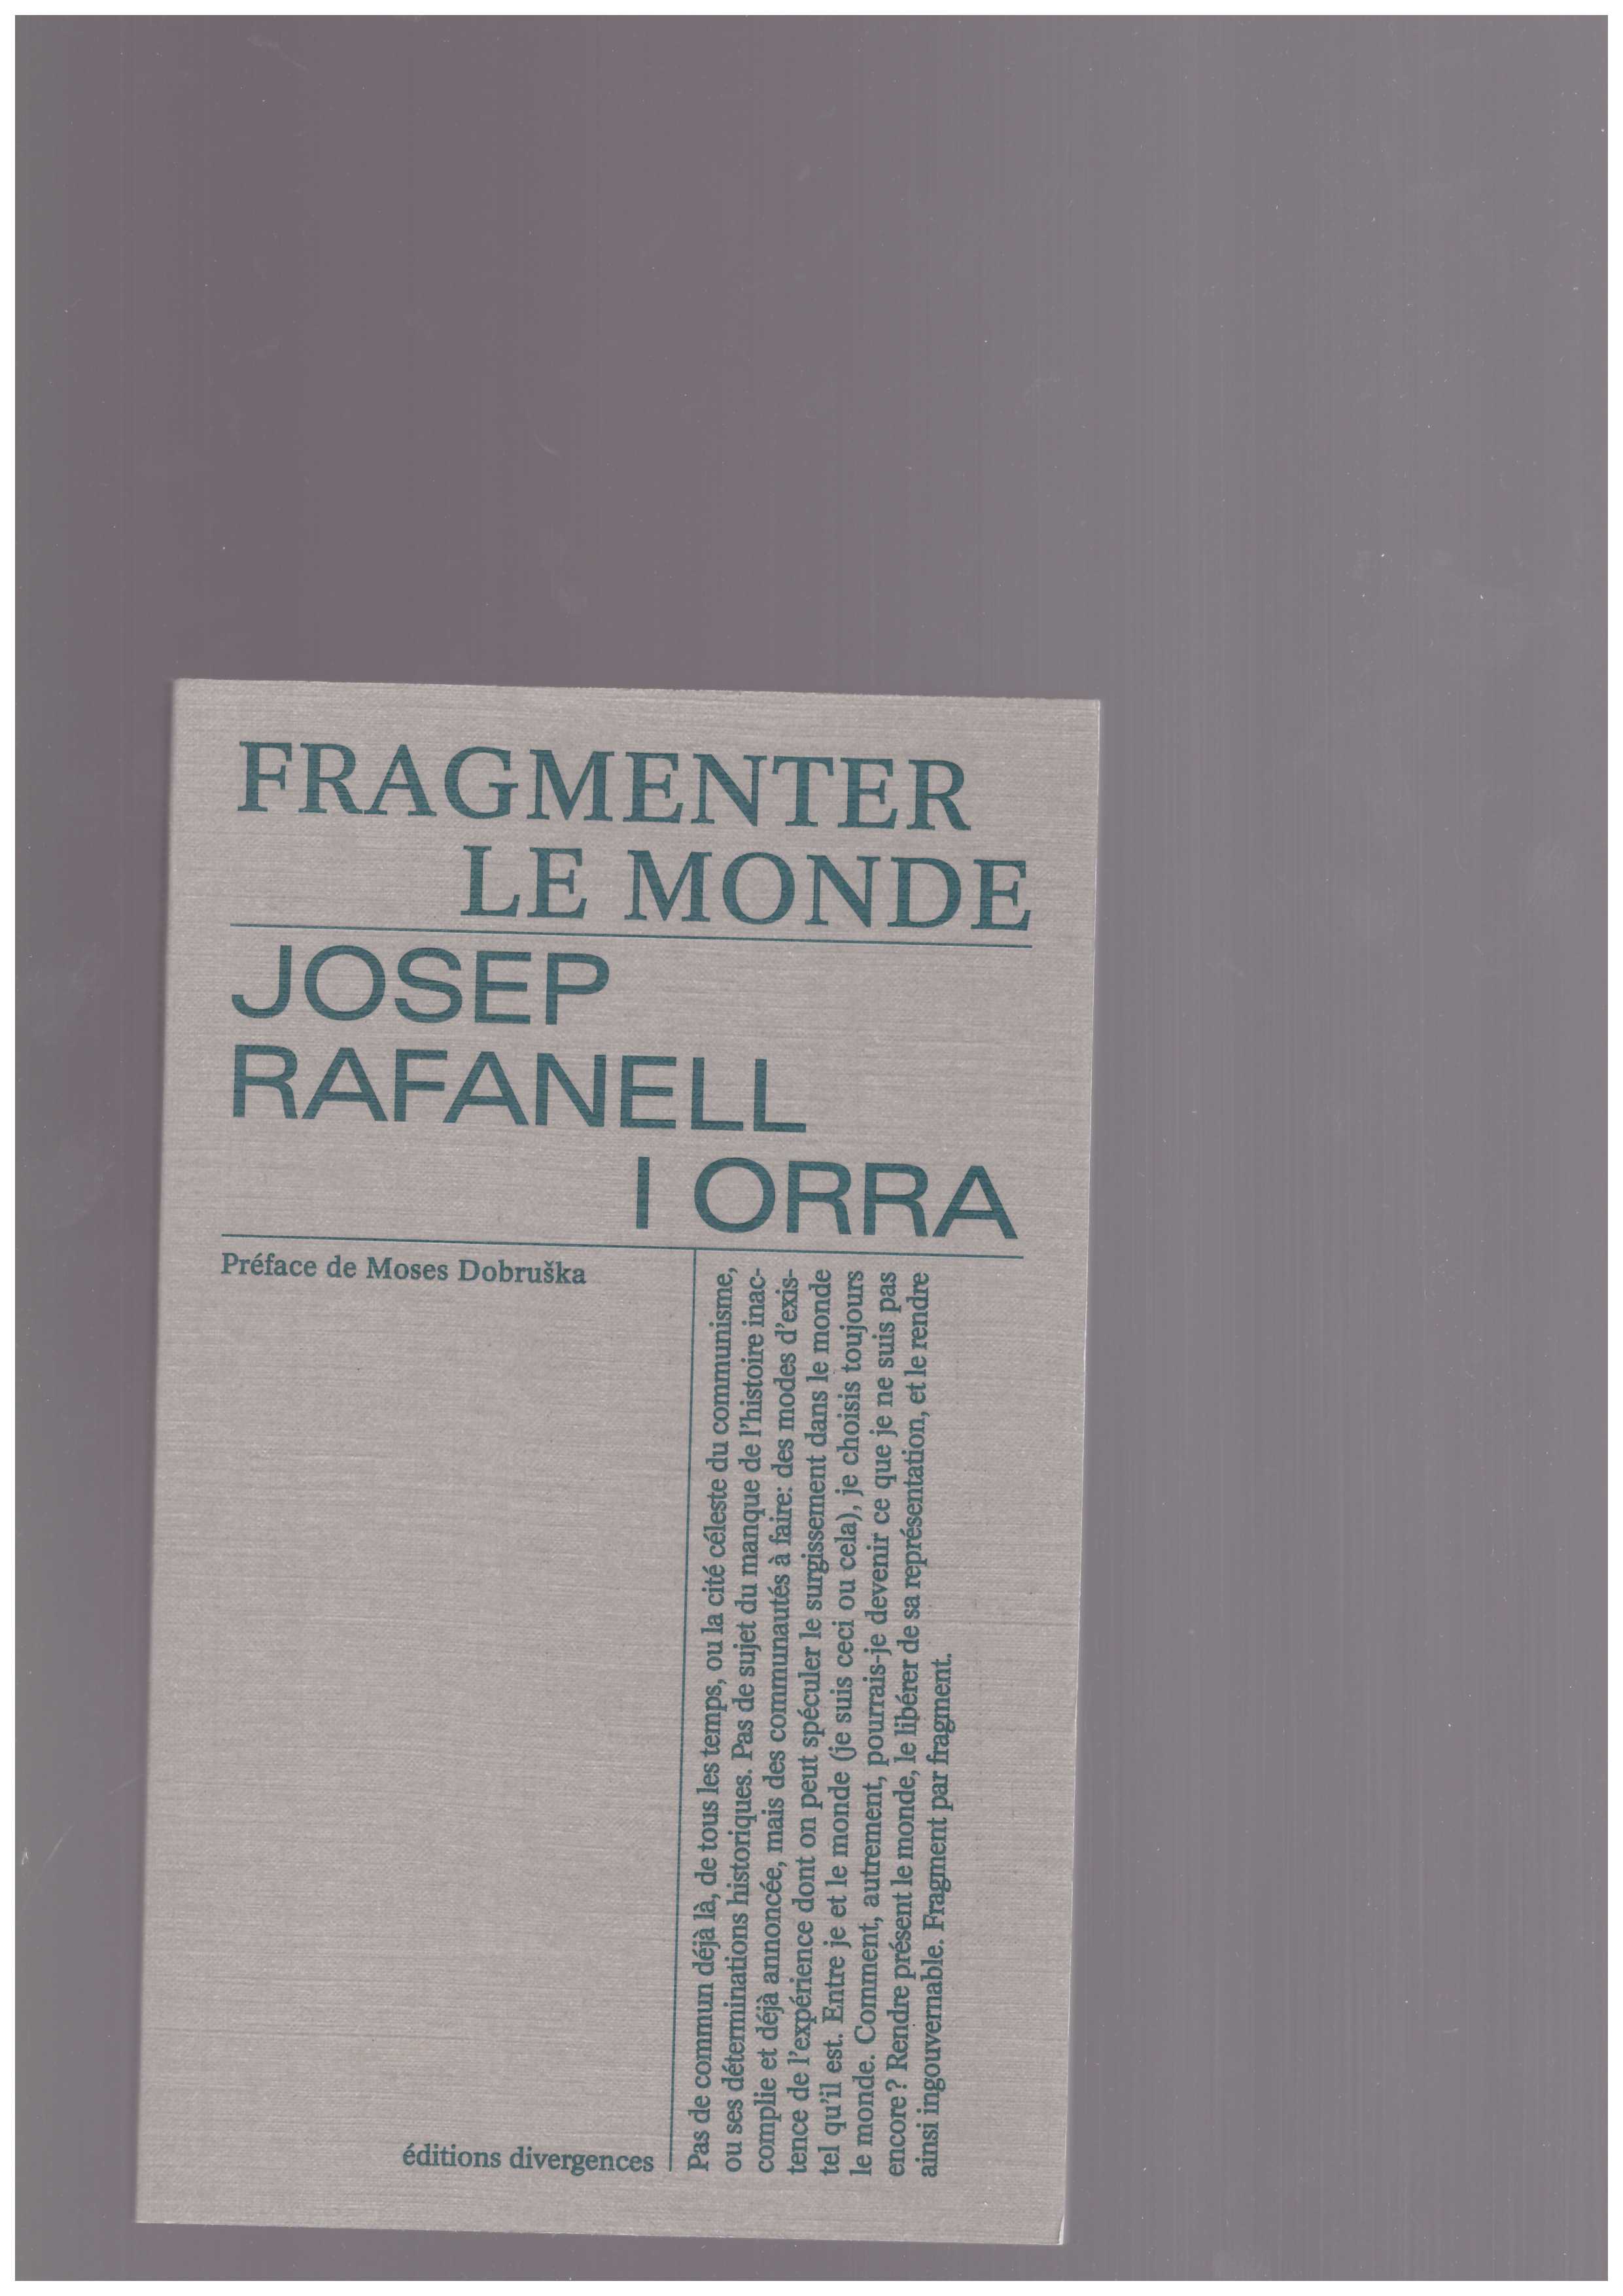 I ORRA, Josep Rafanell - Fragmenter le monde